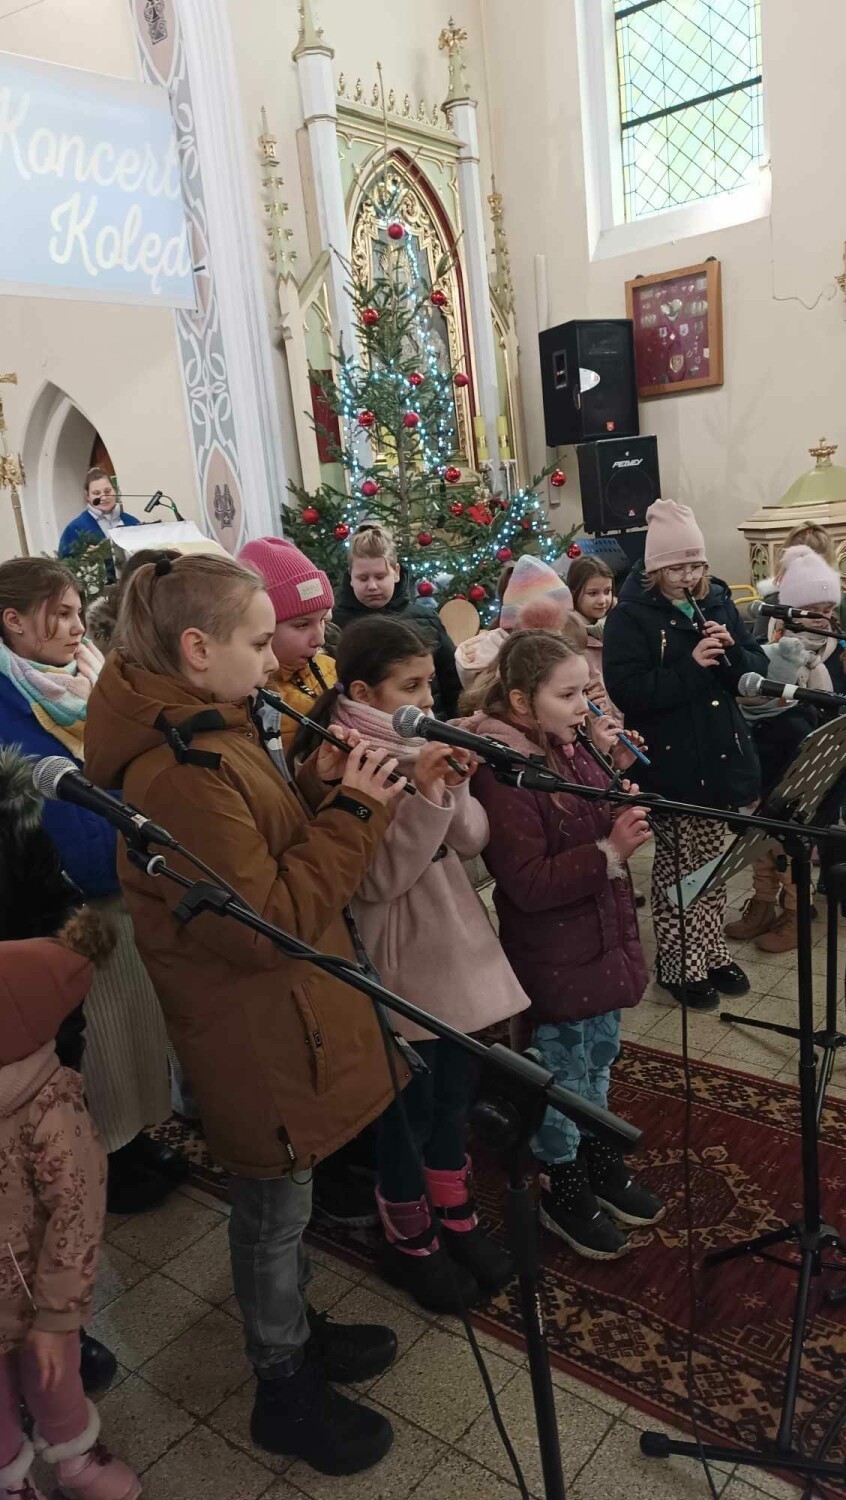 Zagrali i zaśpiewali dla małego Krzysia z Gołaszyna. Koncert kolęd i pastorałek w Kościele w Maniewie połączony z akcją charytatywną